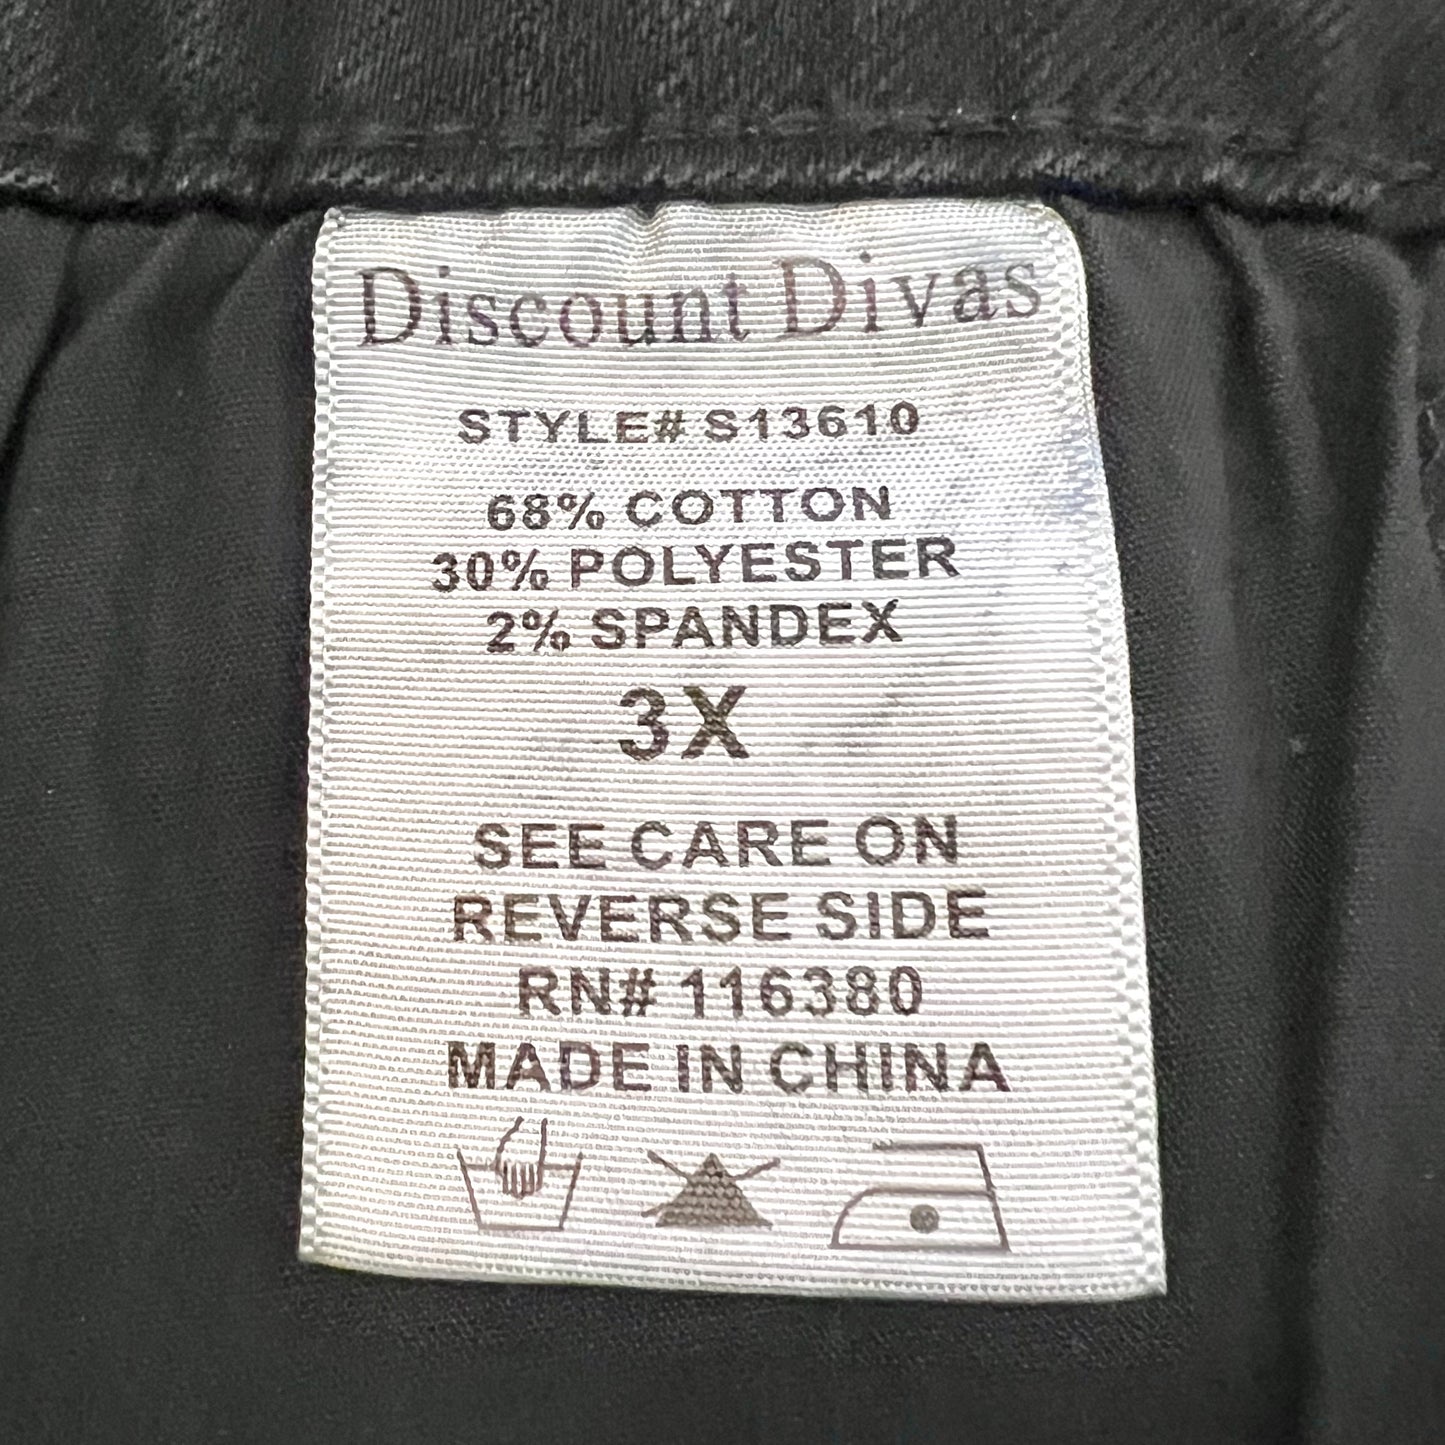 Shorts By Discount Divas  Size: 3x